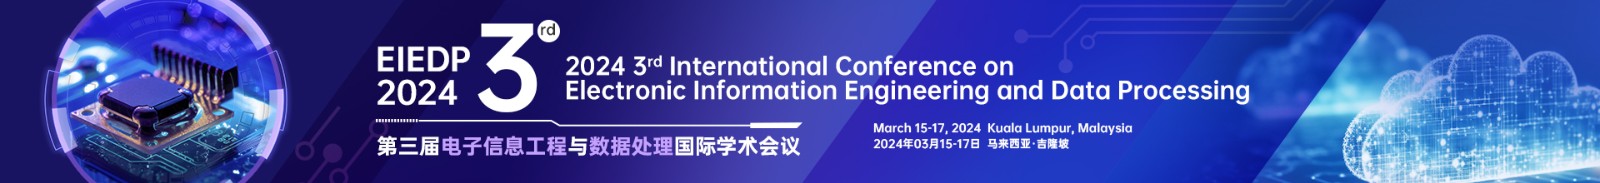 3月吉隆坡-EIEDP-2024-学术会议云.jpg